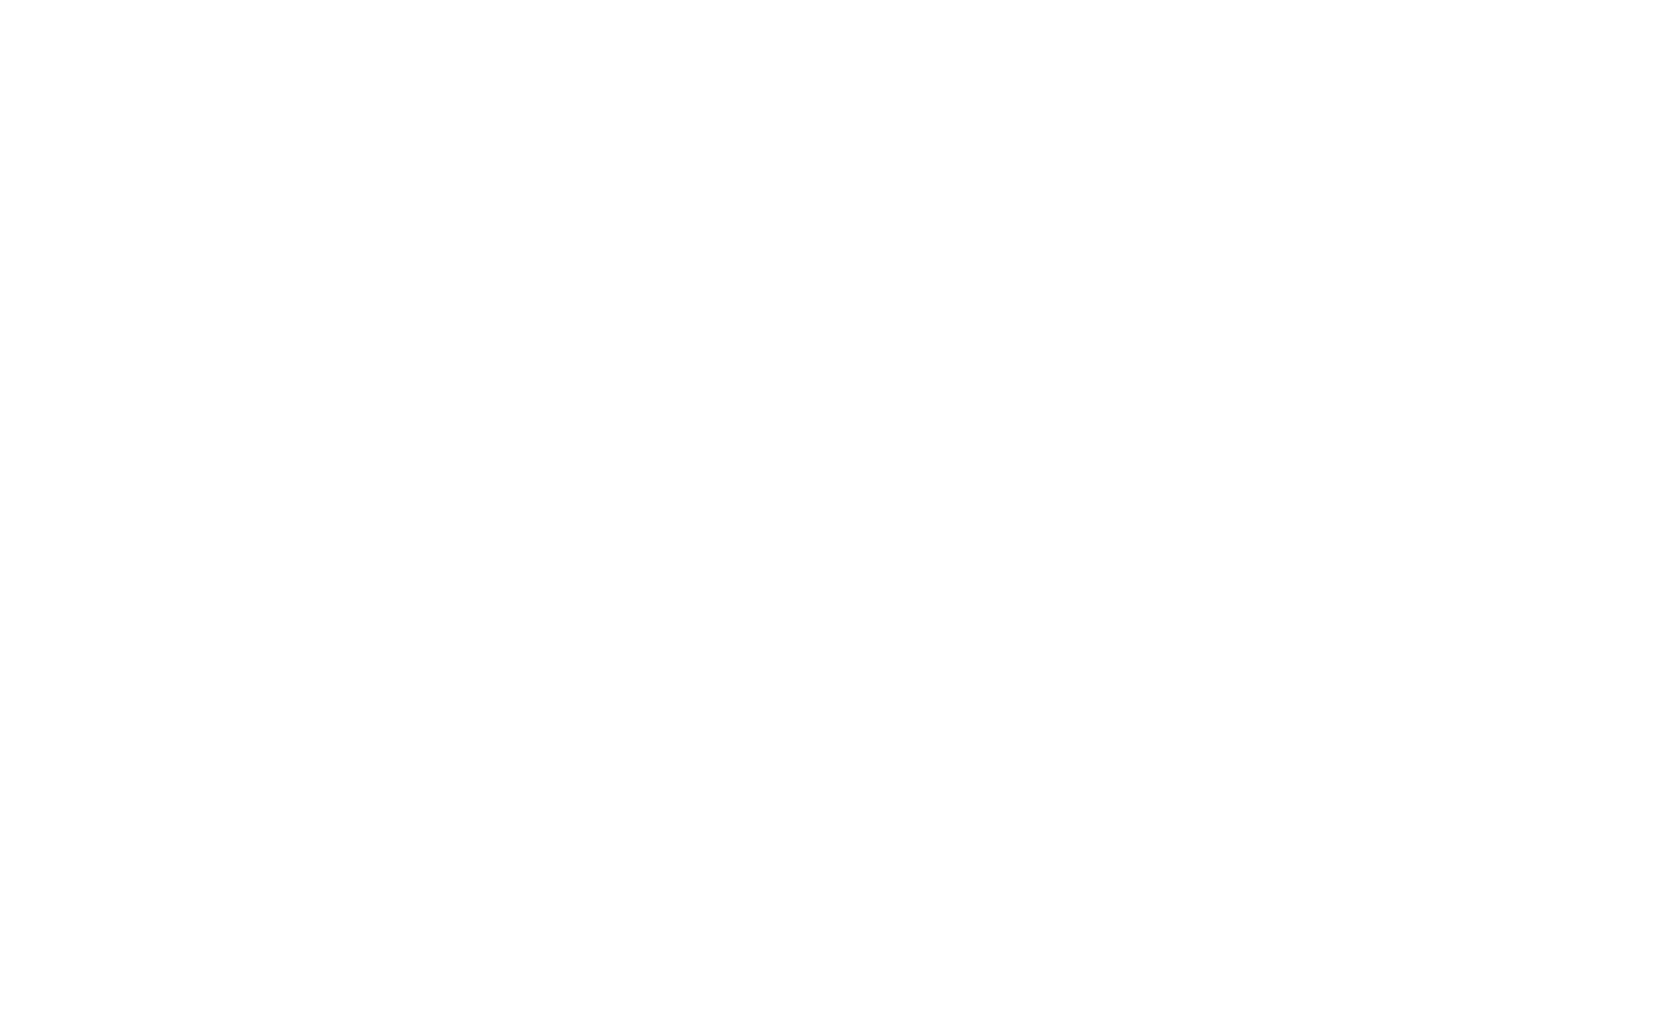 Народный театр драмы. Олег Окулевич в моноспектакле «Борис Годунов». 29 января 1983 г.